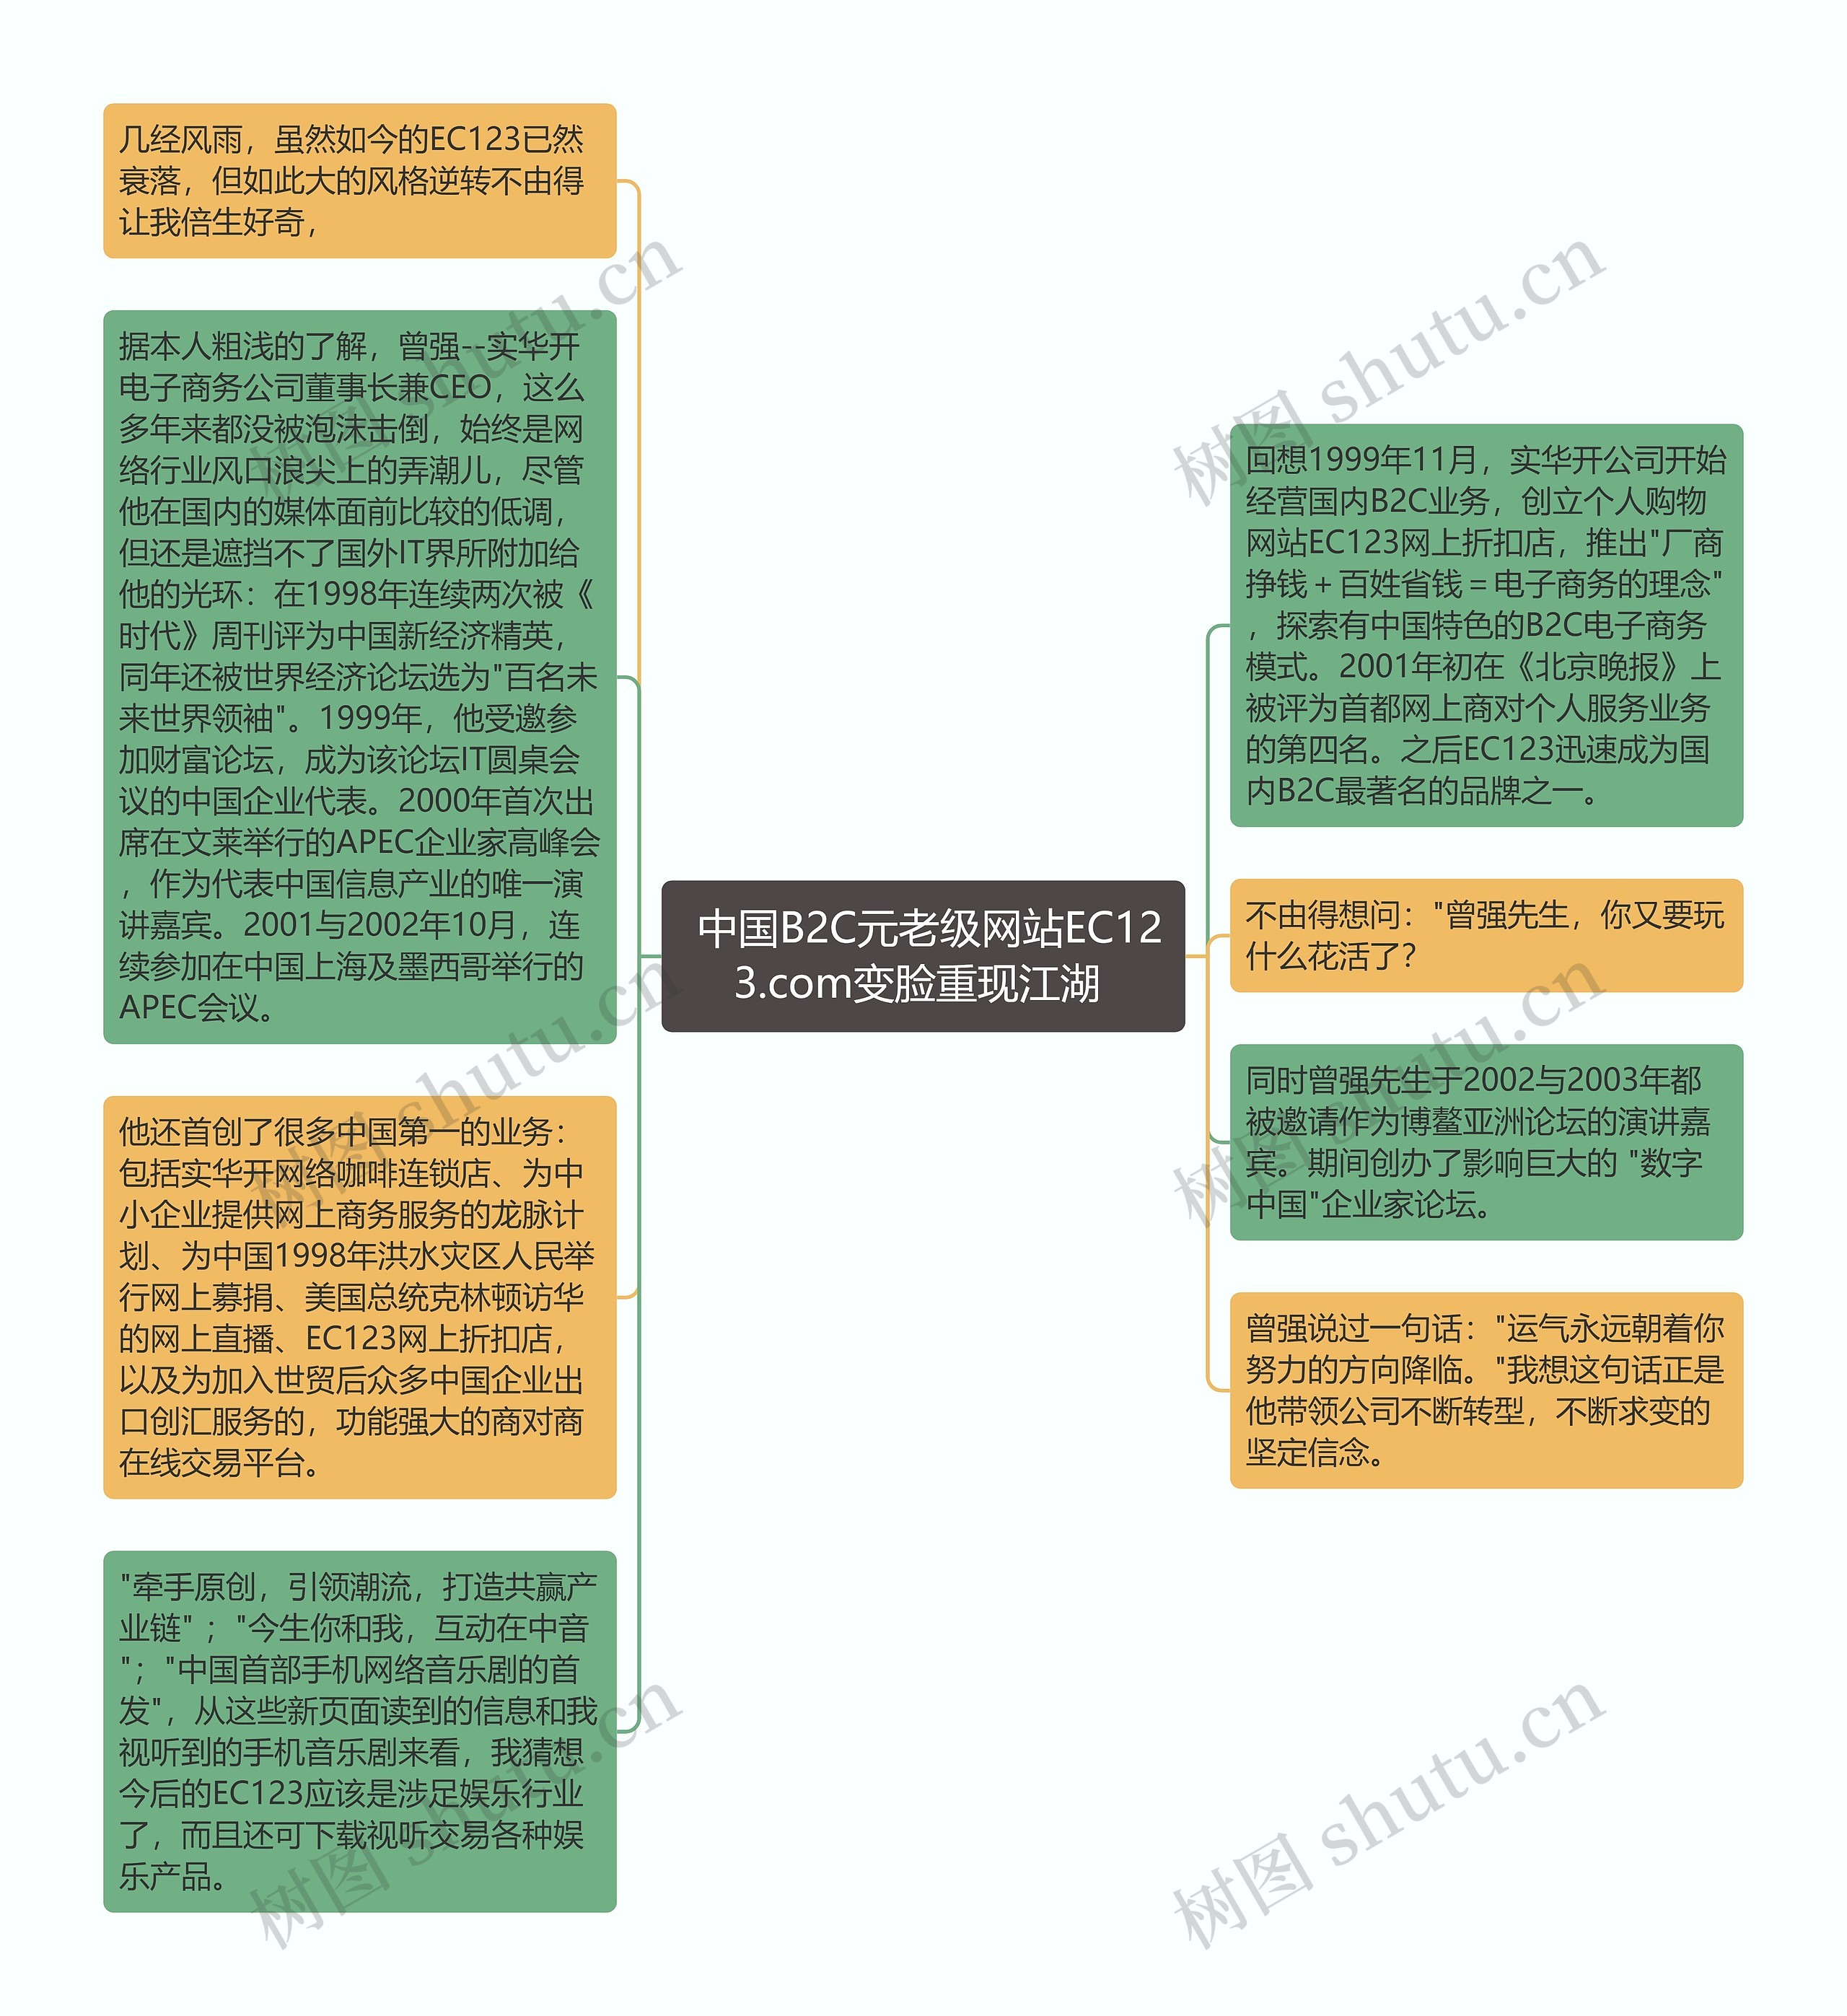  中国B2C元老级网站EC123.com变脸重现江湖 思维导图